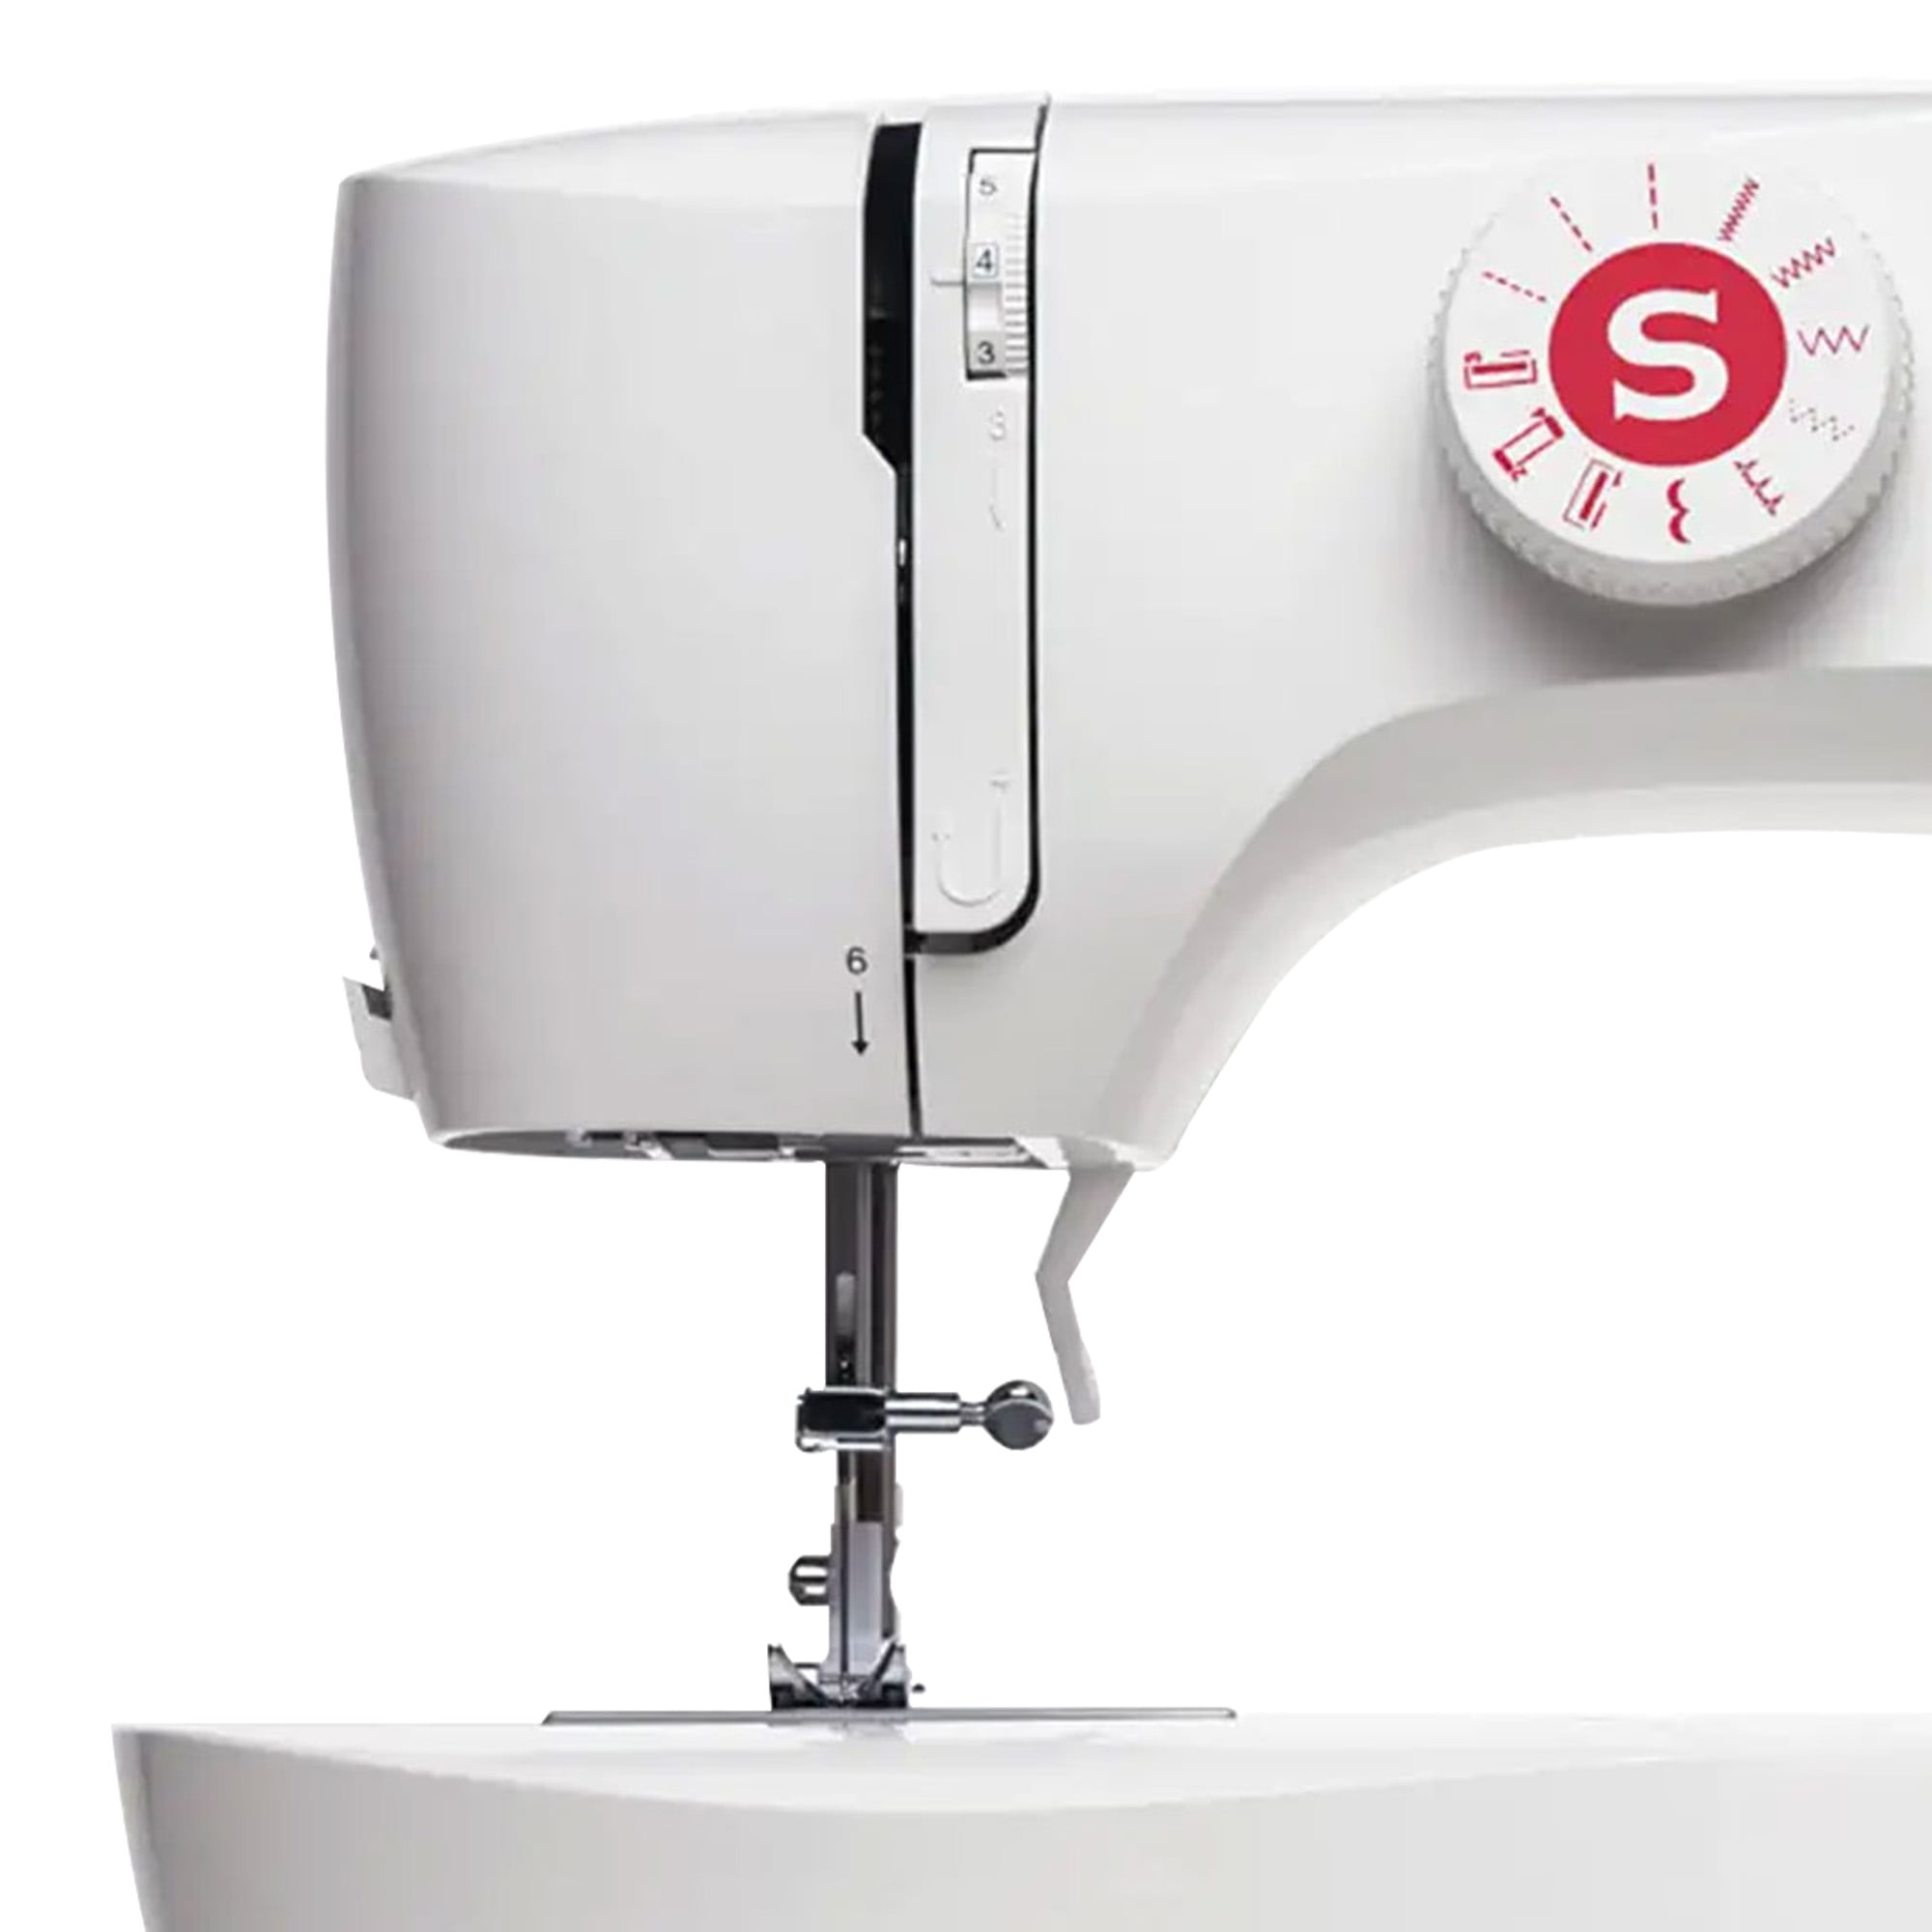 Singer Sewing Machine, White - 20248860